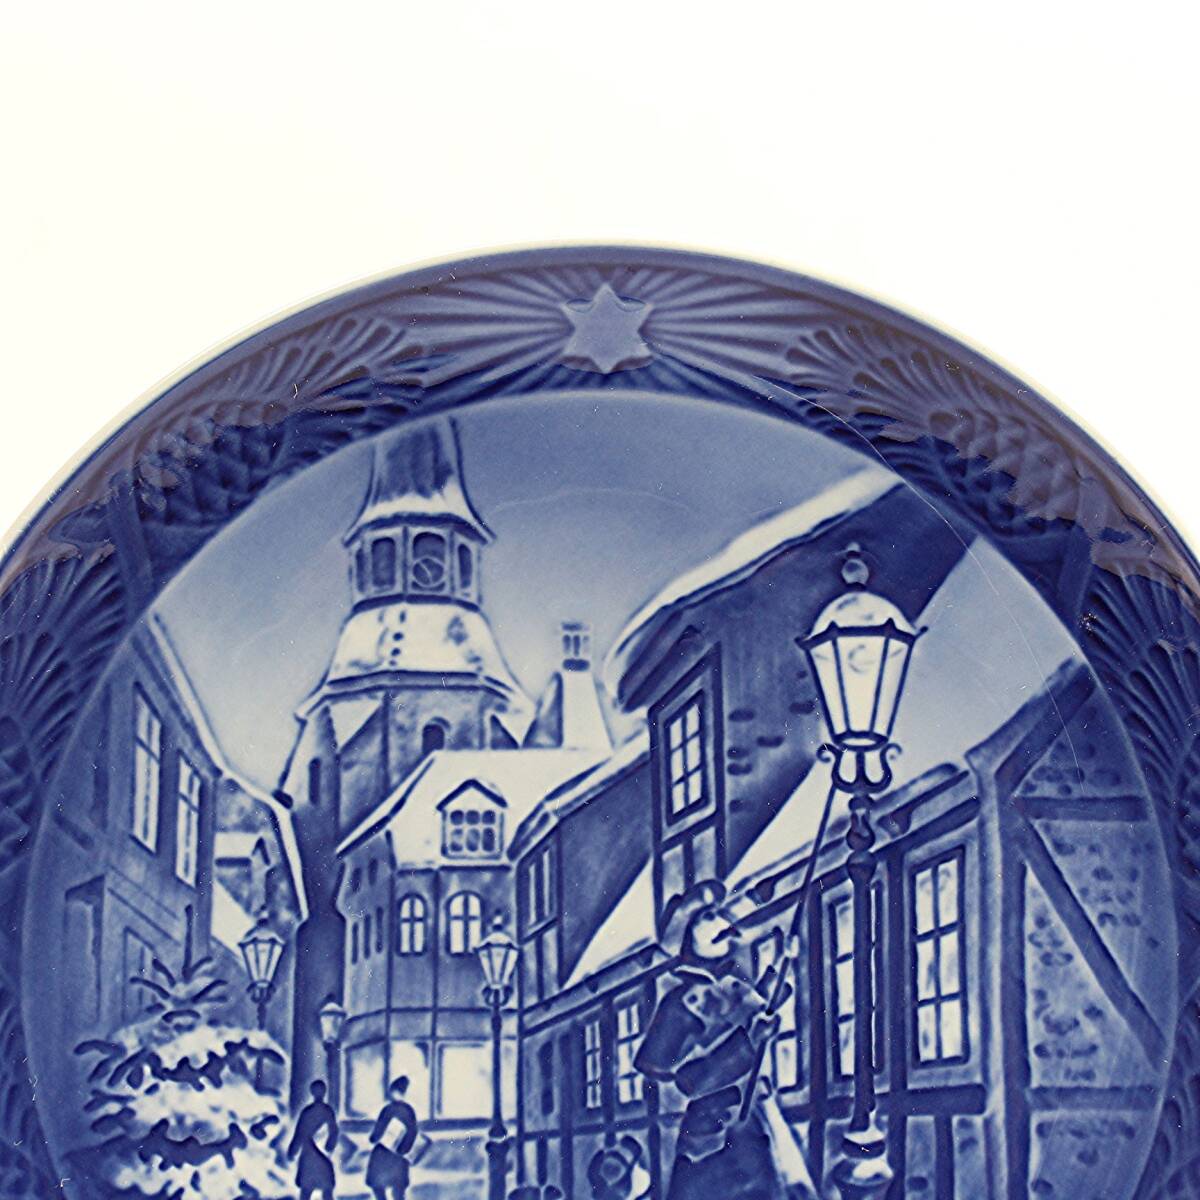 1996年 ロイヤルコペンハーゲン イヤープレート 「街灯に灯をともす」 北欧 デンマーク の 陶磁器 wwww8